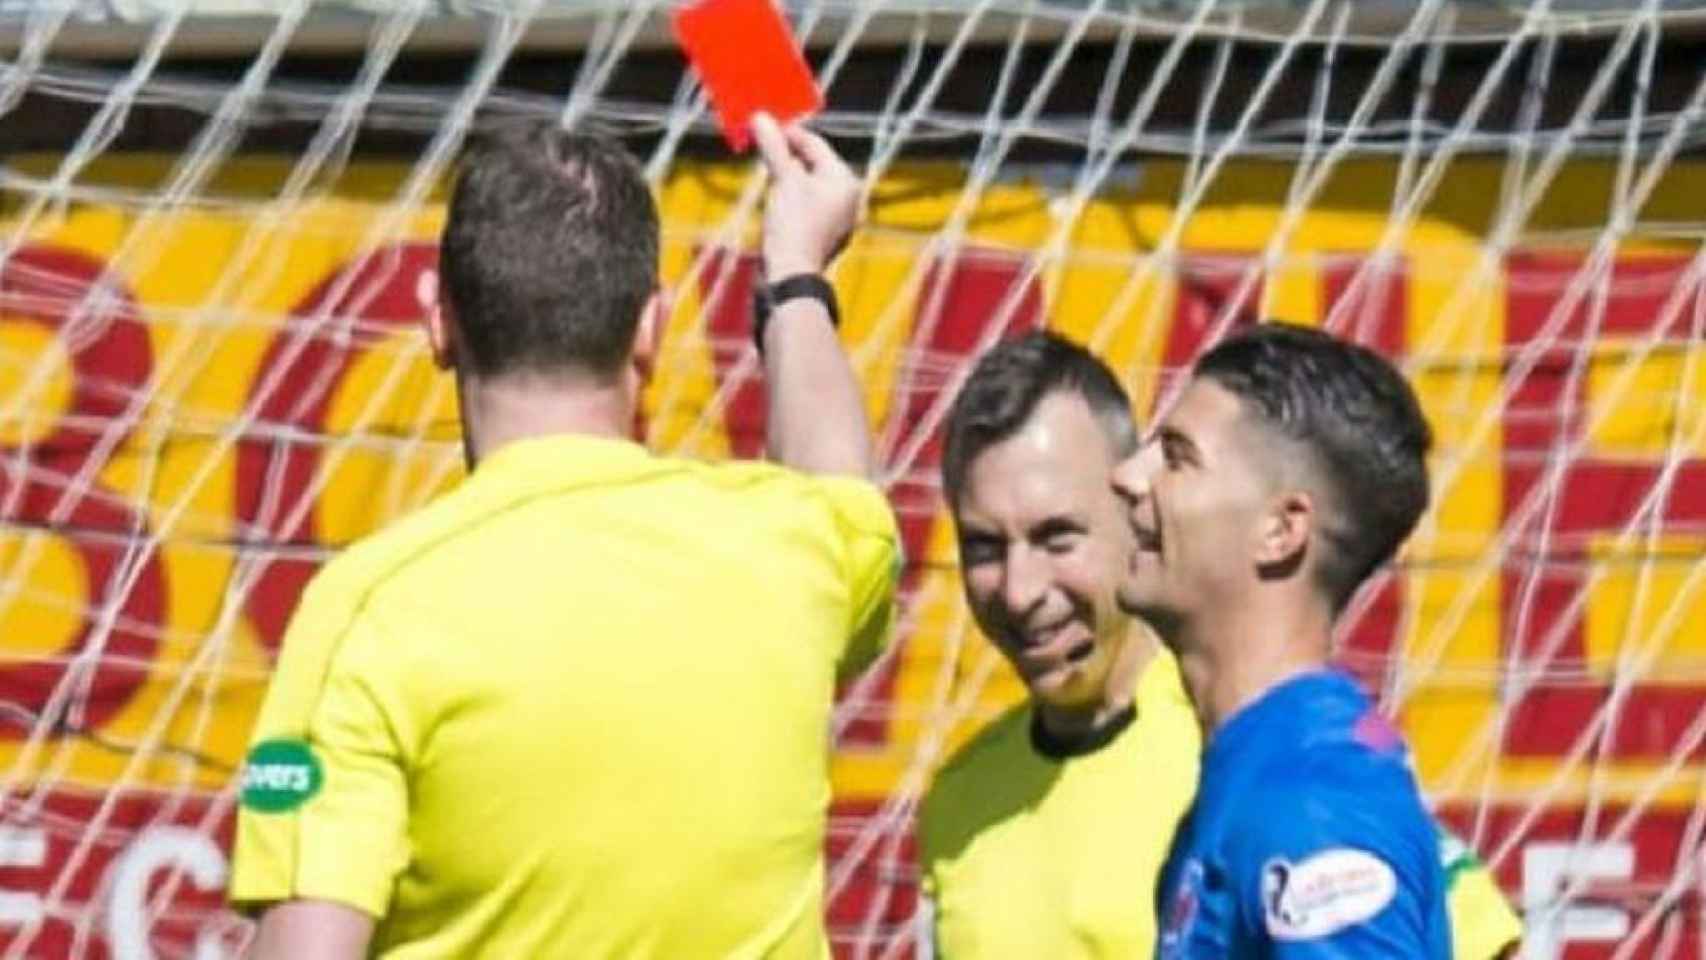 El árbitro se tomó con humor lo ocurrido y mostró tarjeta roja al linier